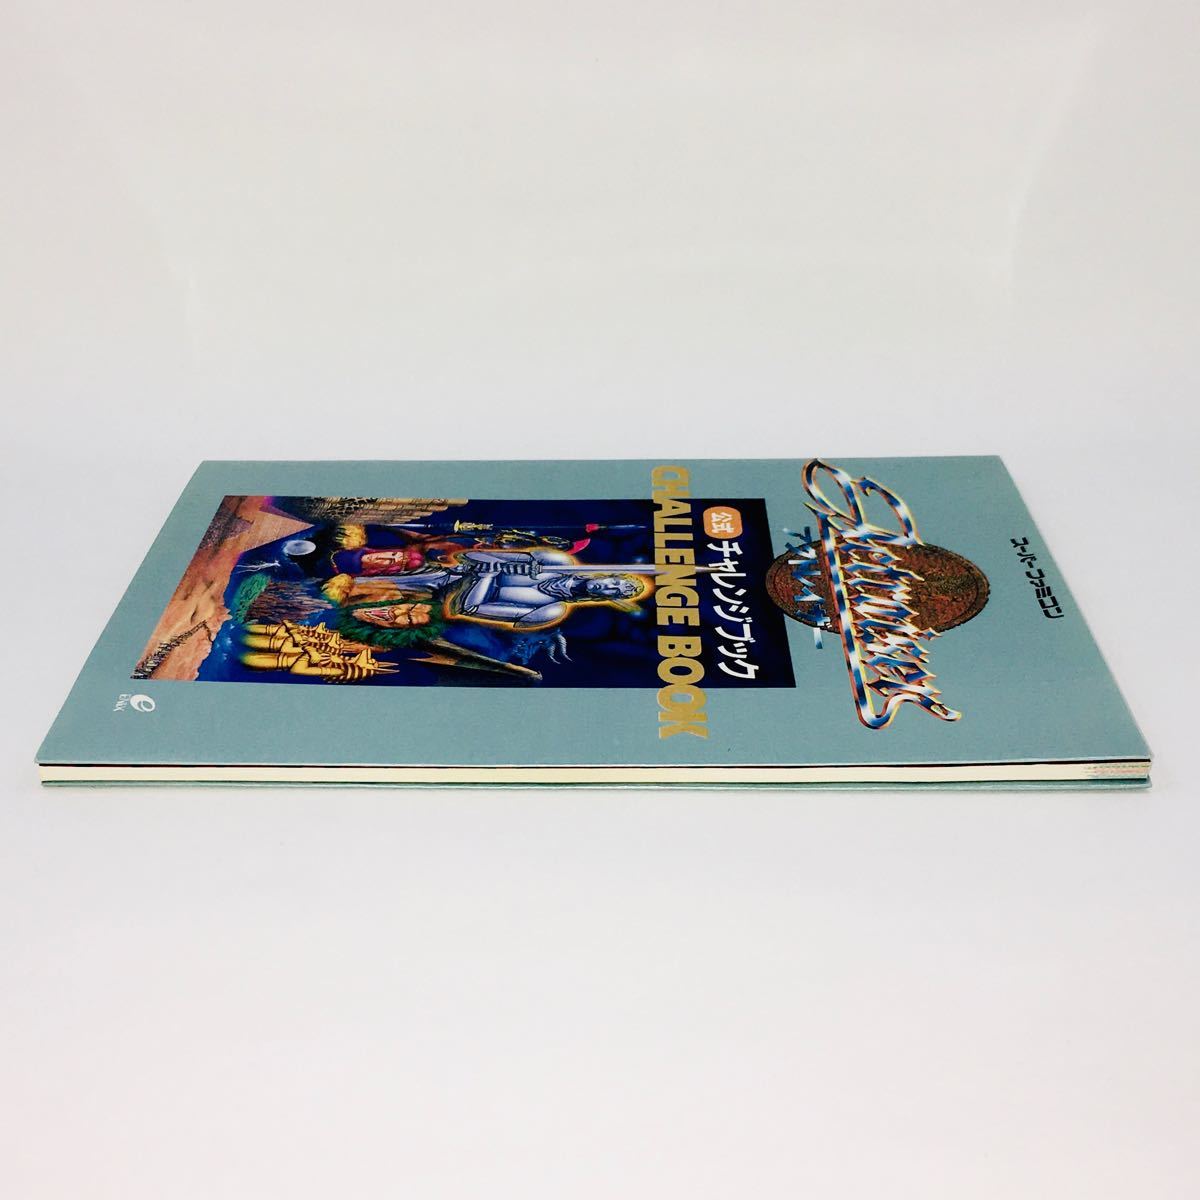 アクトレイザー 公式チャレンジブック スーパーファミコン 攻略本 SUPER Famicom SFC